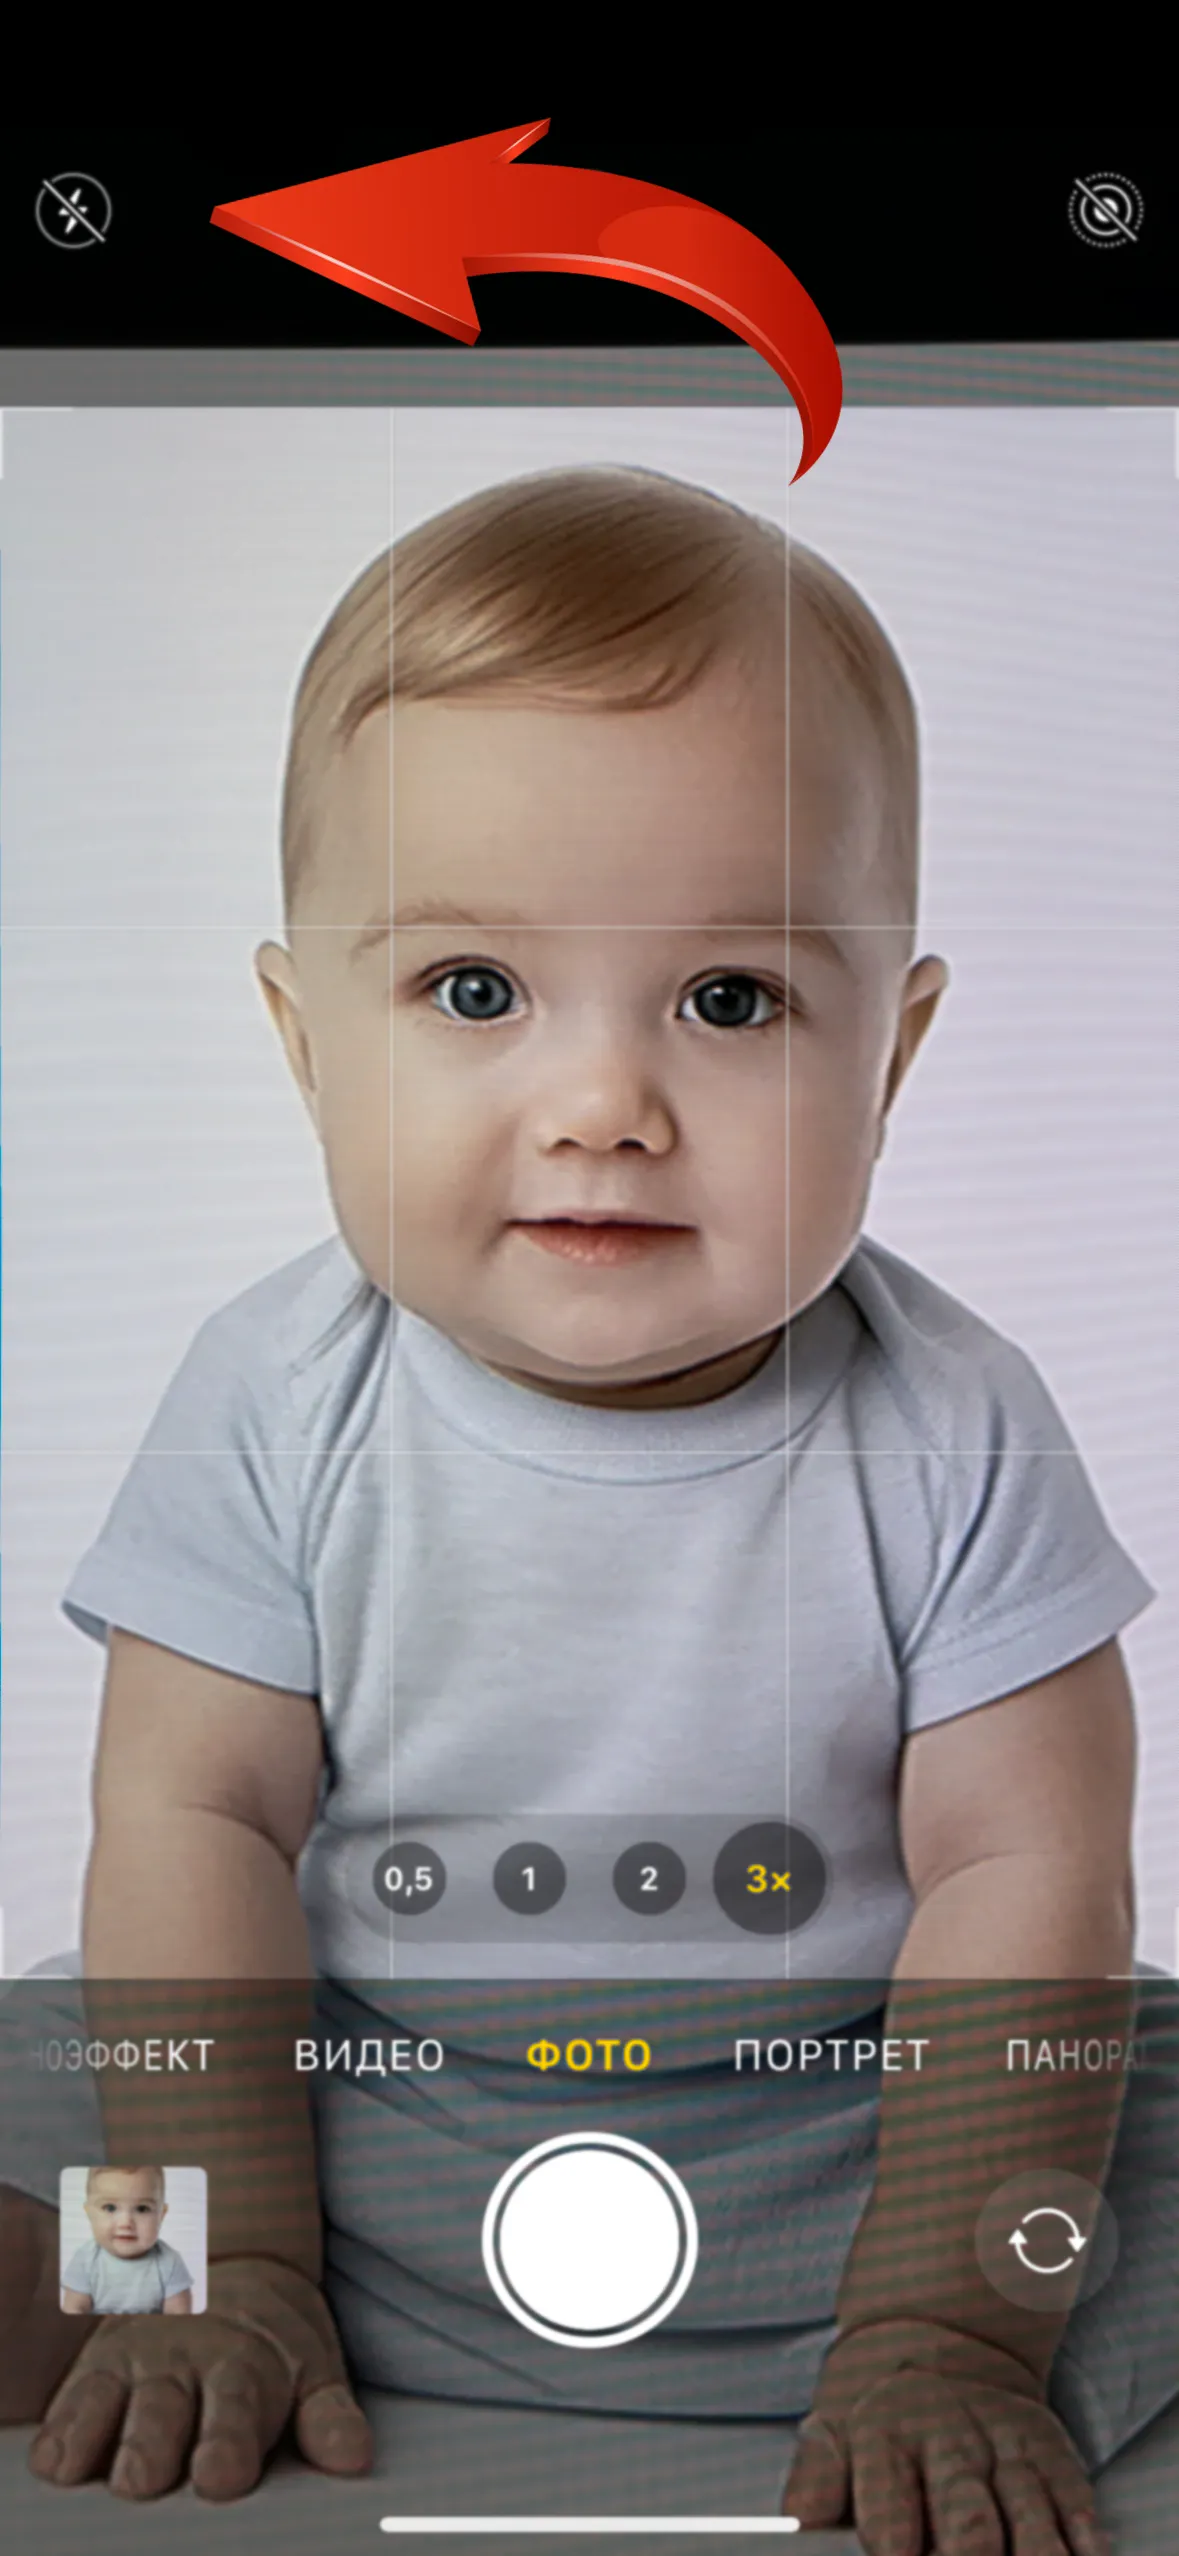 Как сделать фото на документы младенцу